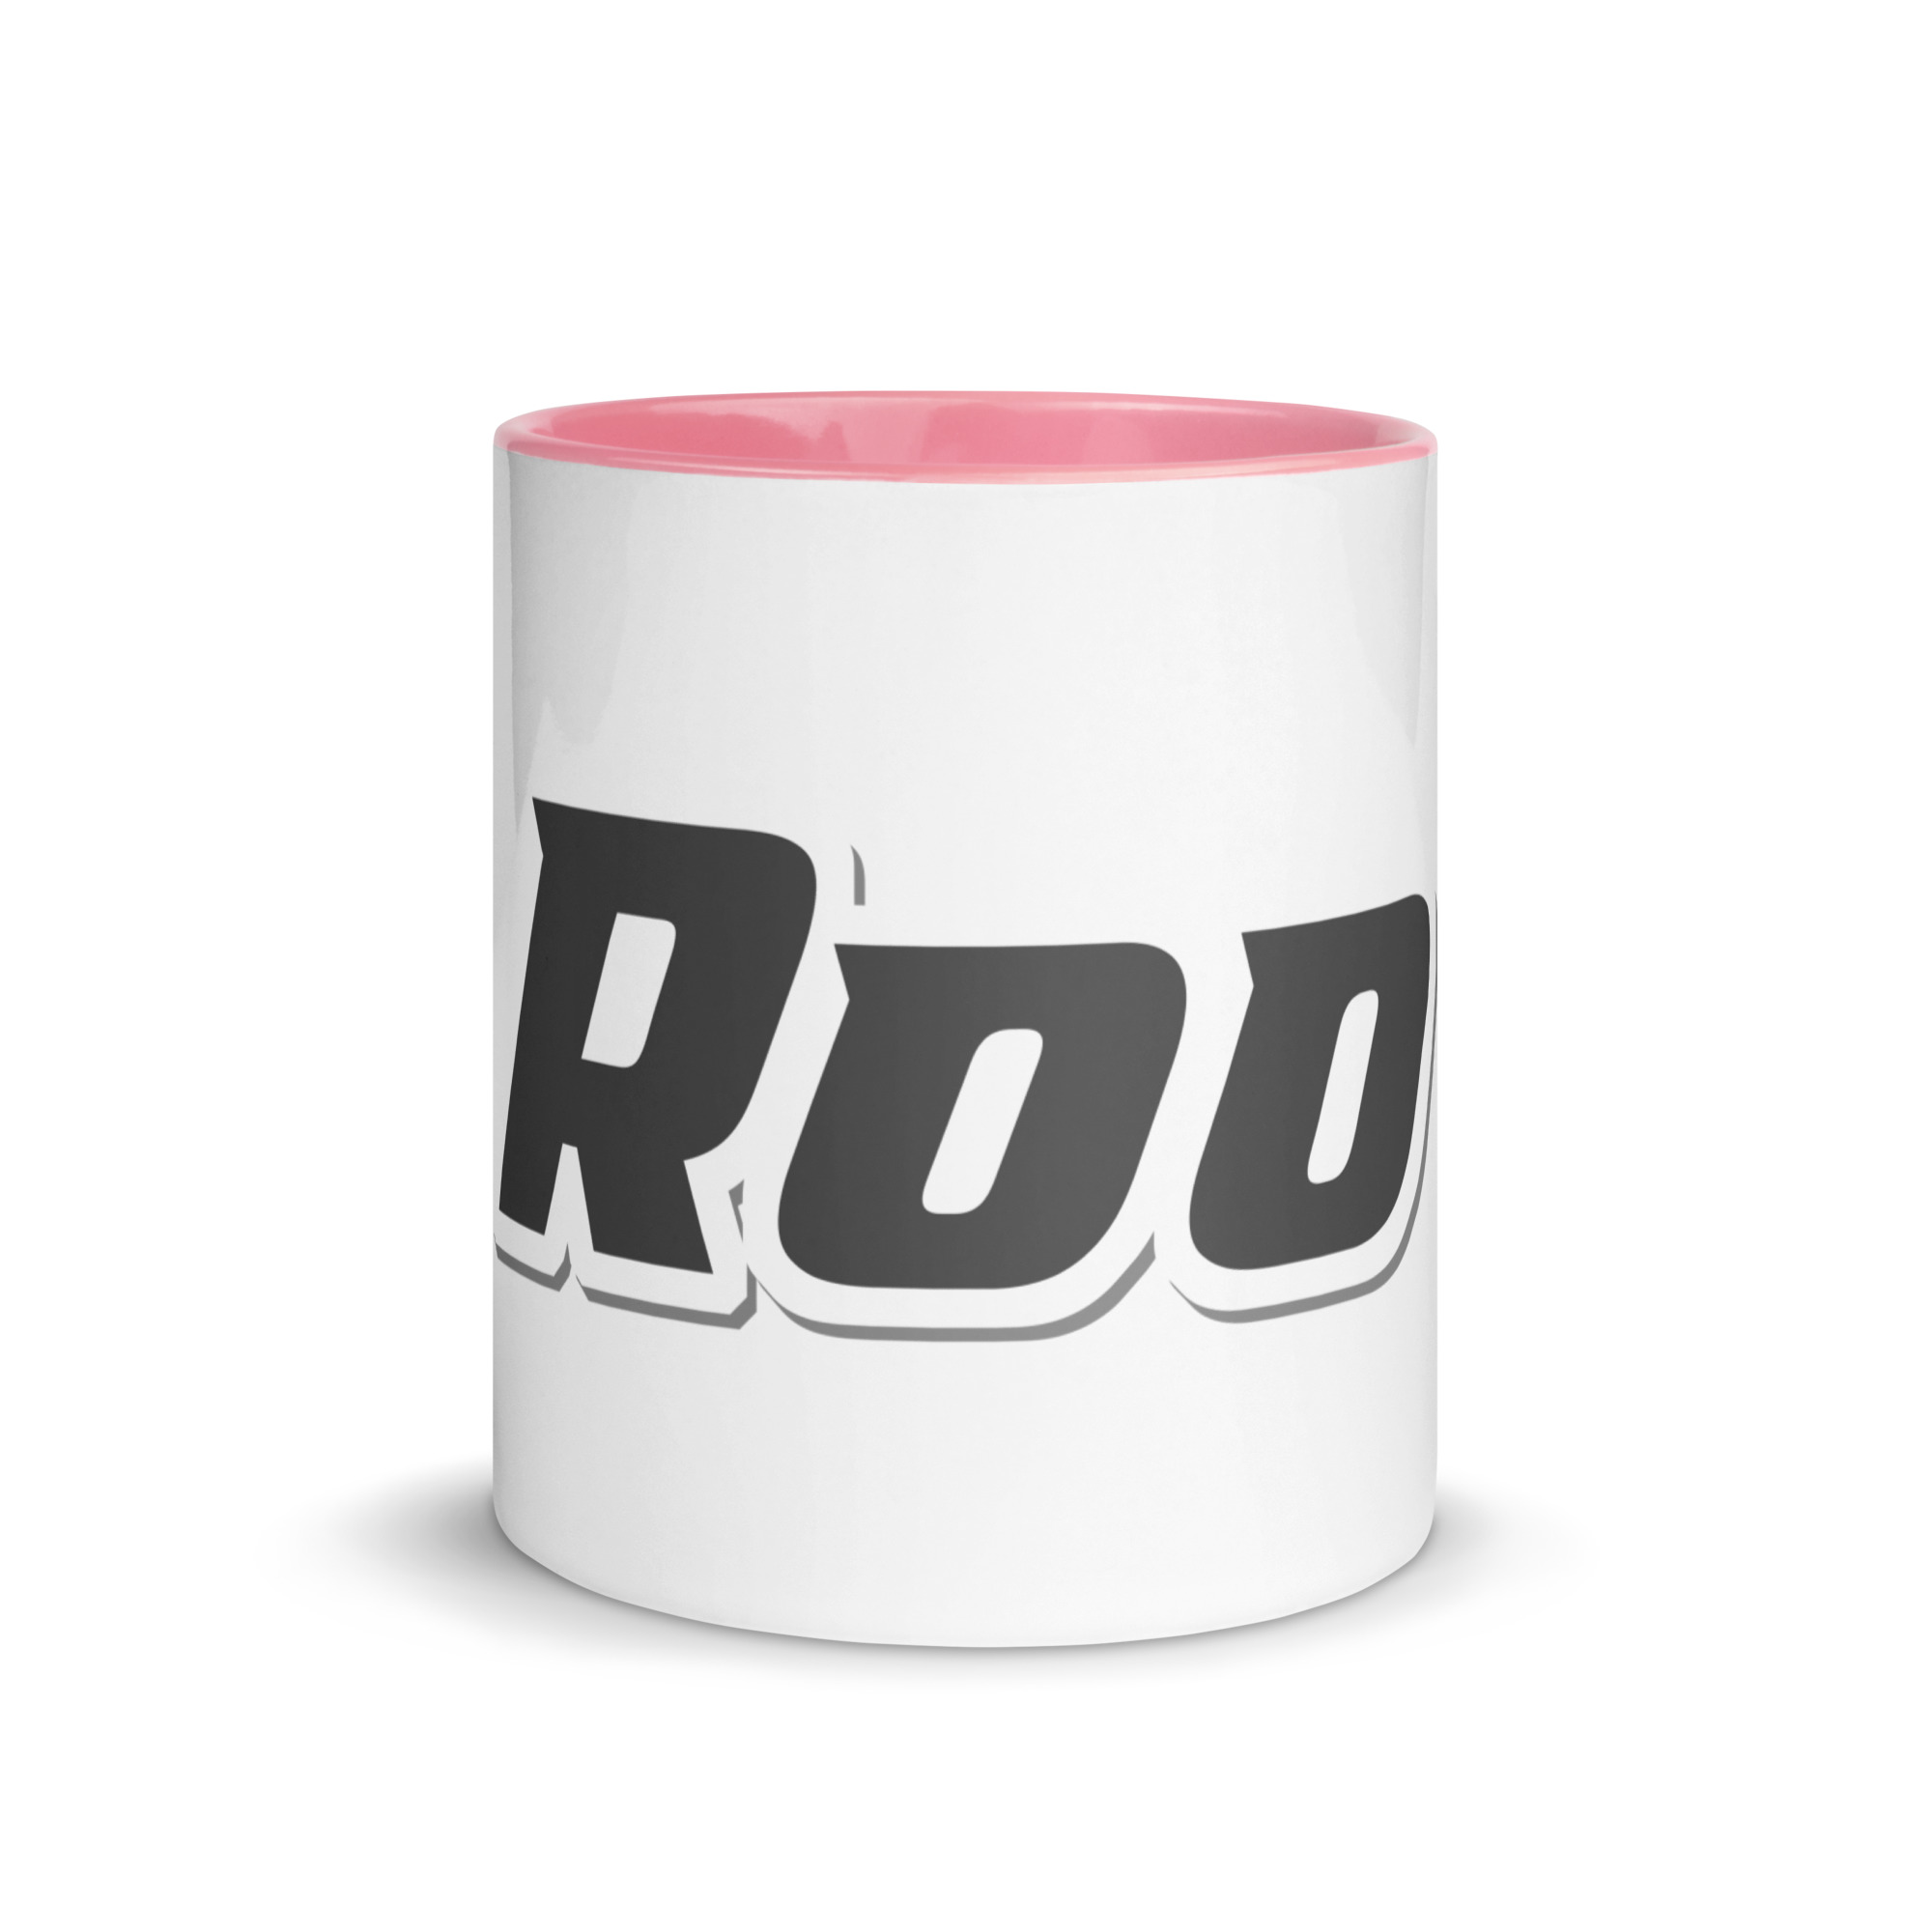 white-ceramic-mug-with-color-inside-pink-11-oz-front-6525b5060928f.jpg